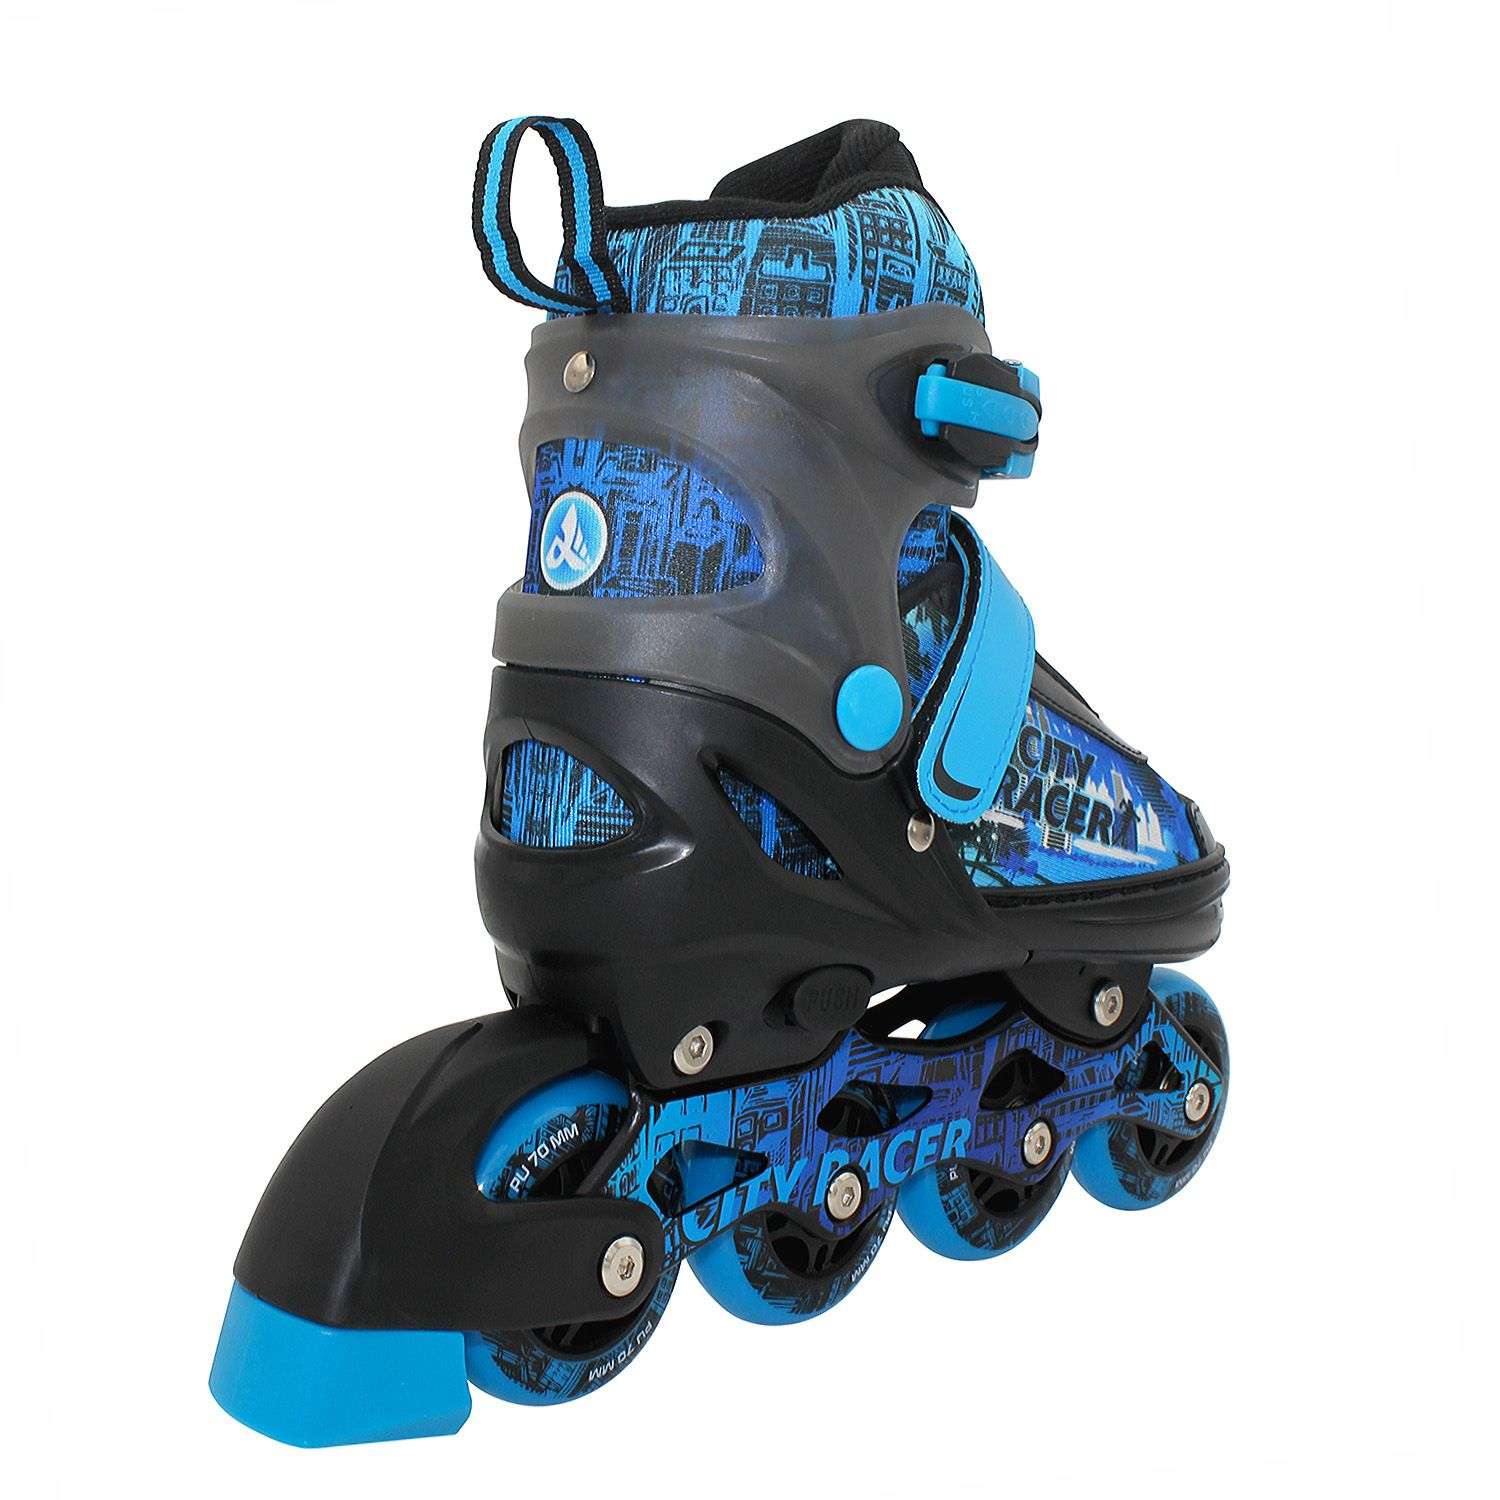 Набор роликовые коньки Sport Collection раздвижные Set City Racer Blue шлем и набор защиты в сумке размер XS 25-28 - фото 6